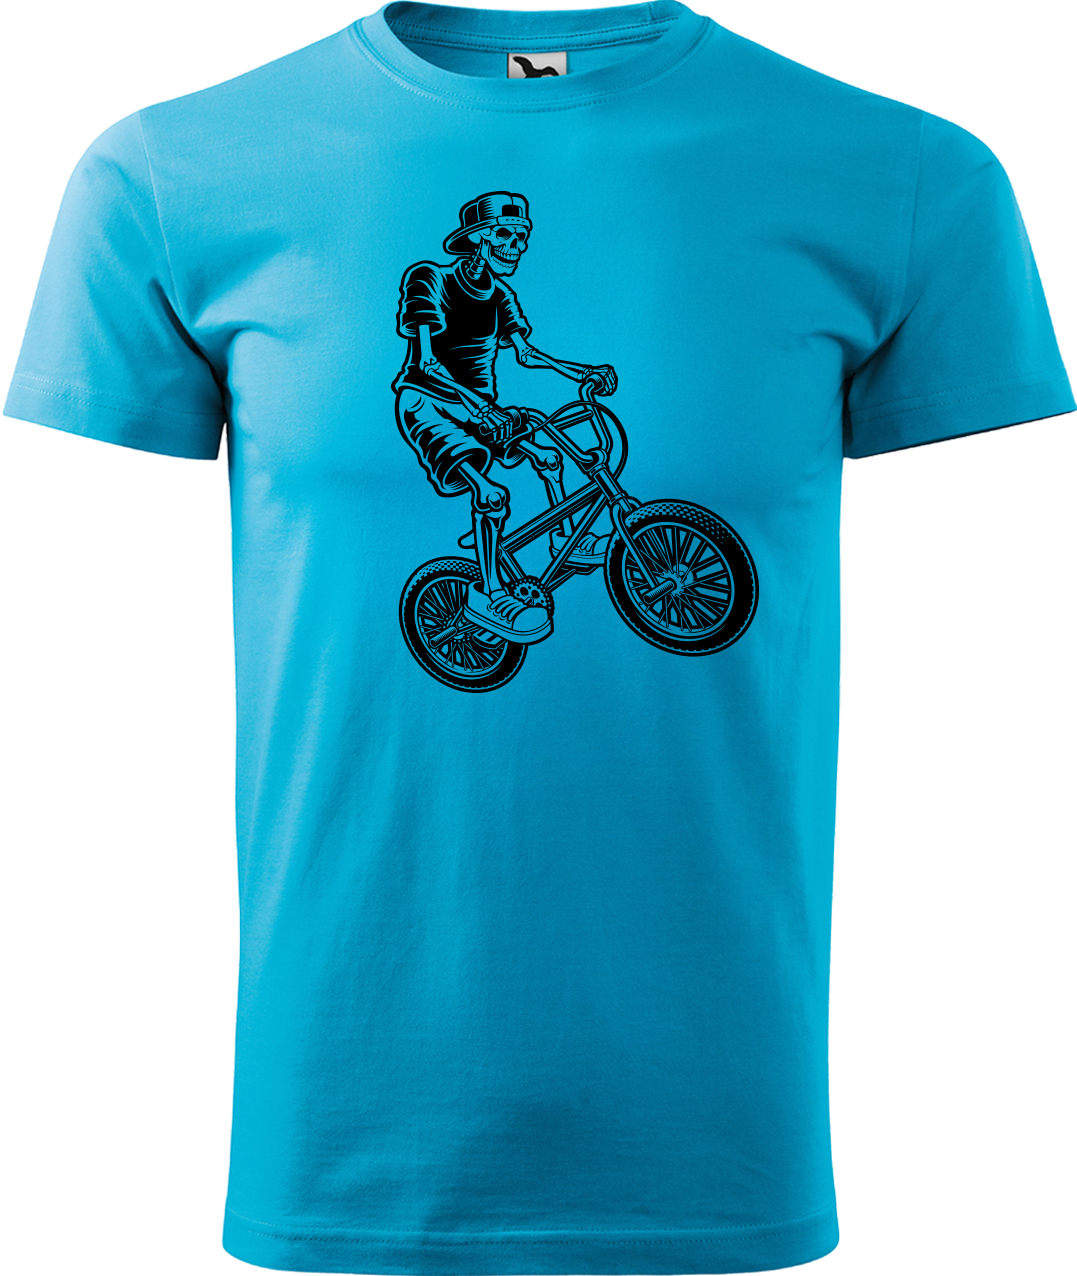 Pánské tričko s kolem - Trial Bike Velikost: L, Barva: Tyrkysová (44)